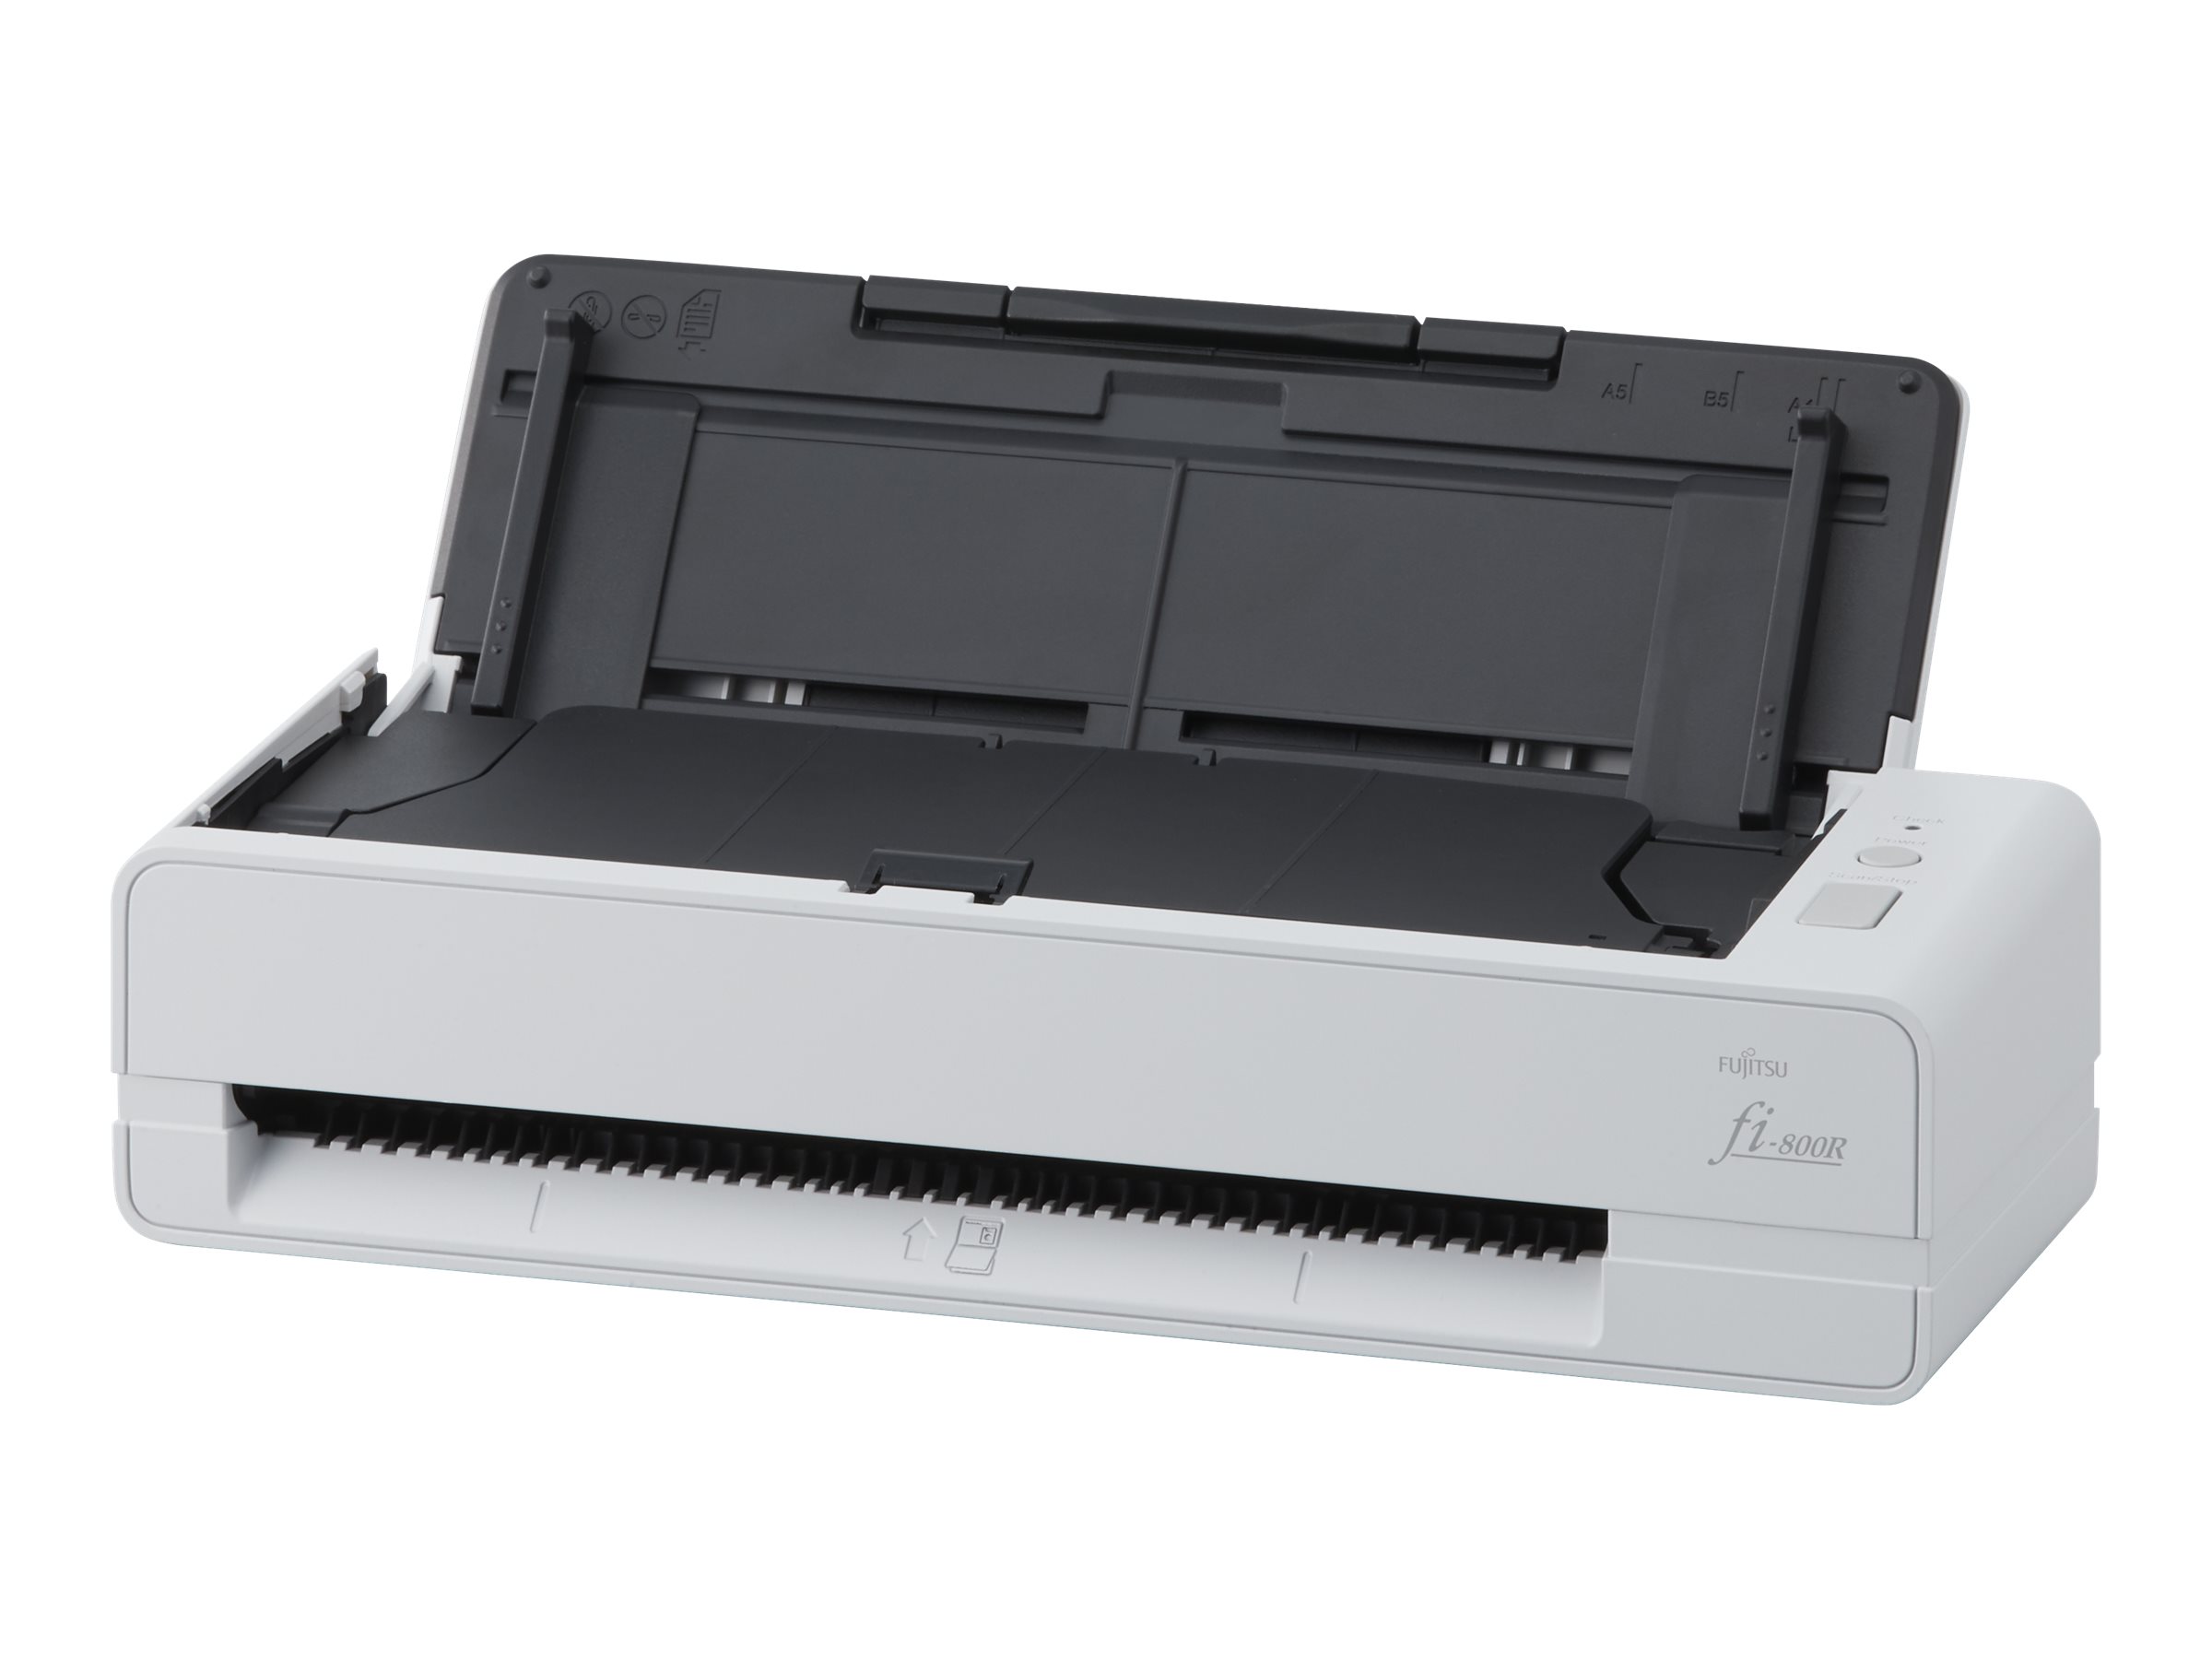 Fujitsu fi-800R - Dokumentenscanner - Duplex - A4 - 600 dpi x 600 dpi - bis zu 40 Seiten/Min. (einfarbig)